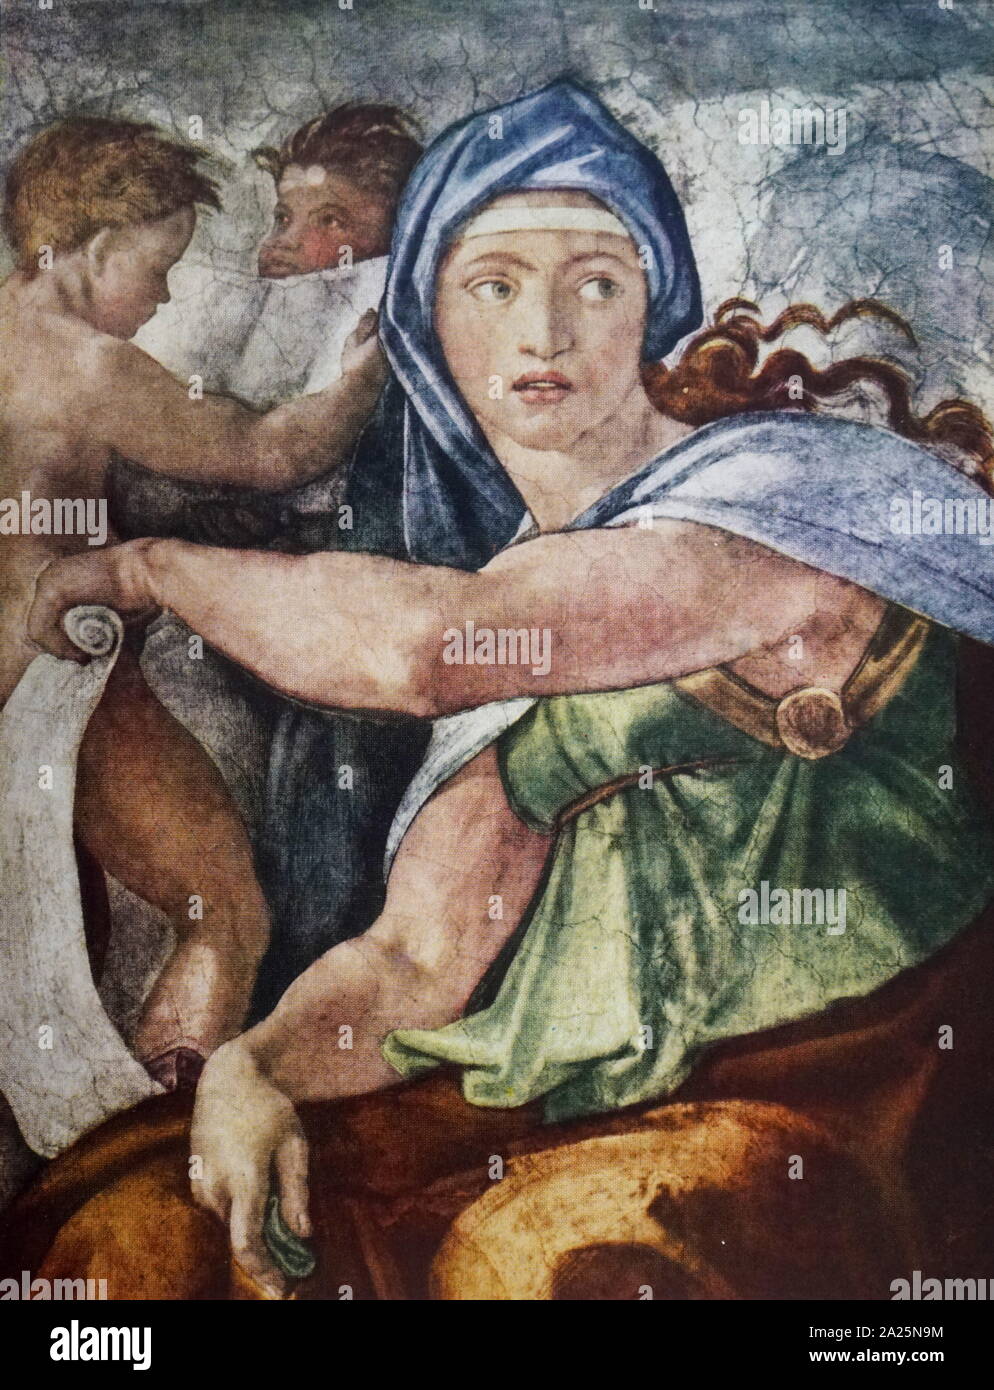 Von der Sixtinischen Kapelle "Delphic Sibyl ' Detail von Michelangelo. Michelangelo di Lodovico Buonarroti Simoni (1475-1564) ein italienischer Bildhauer, Maler, Architekt und Dichter der Renaissance. Stockfoto